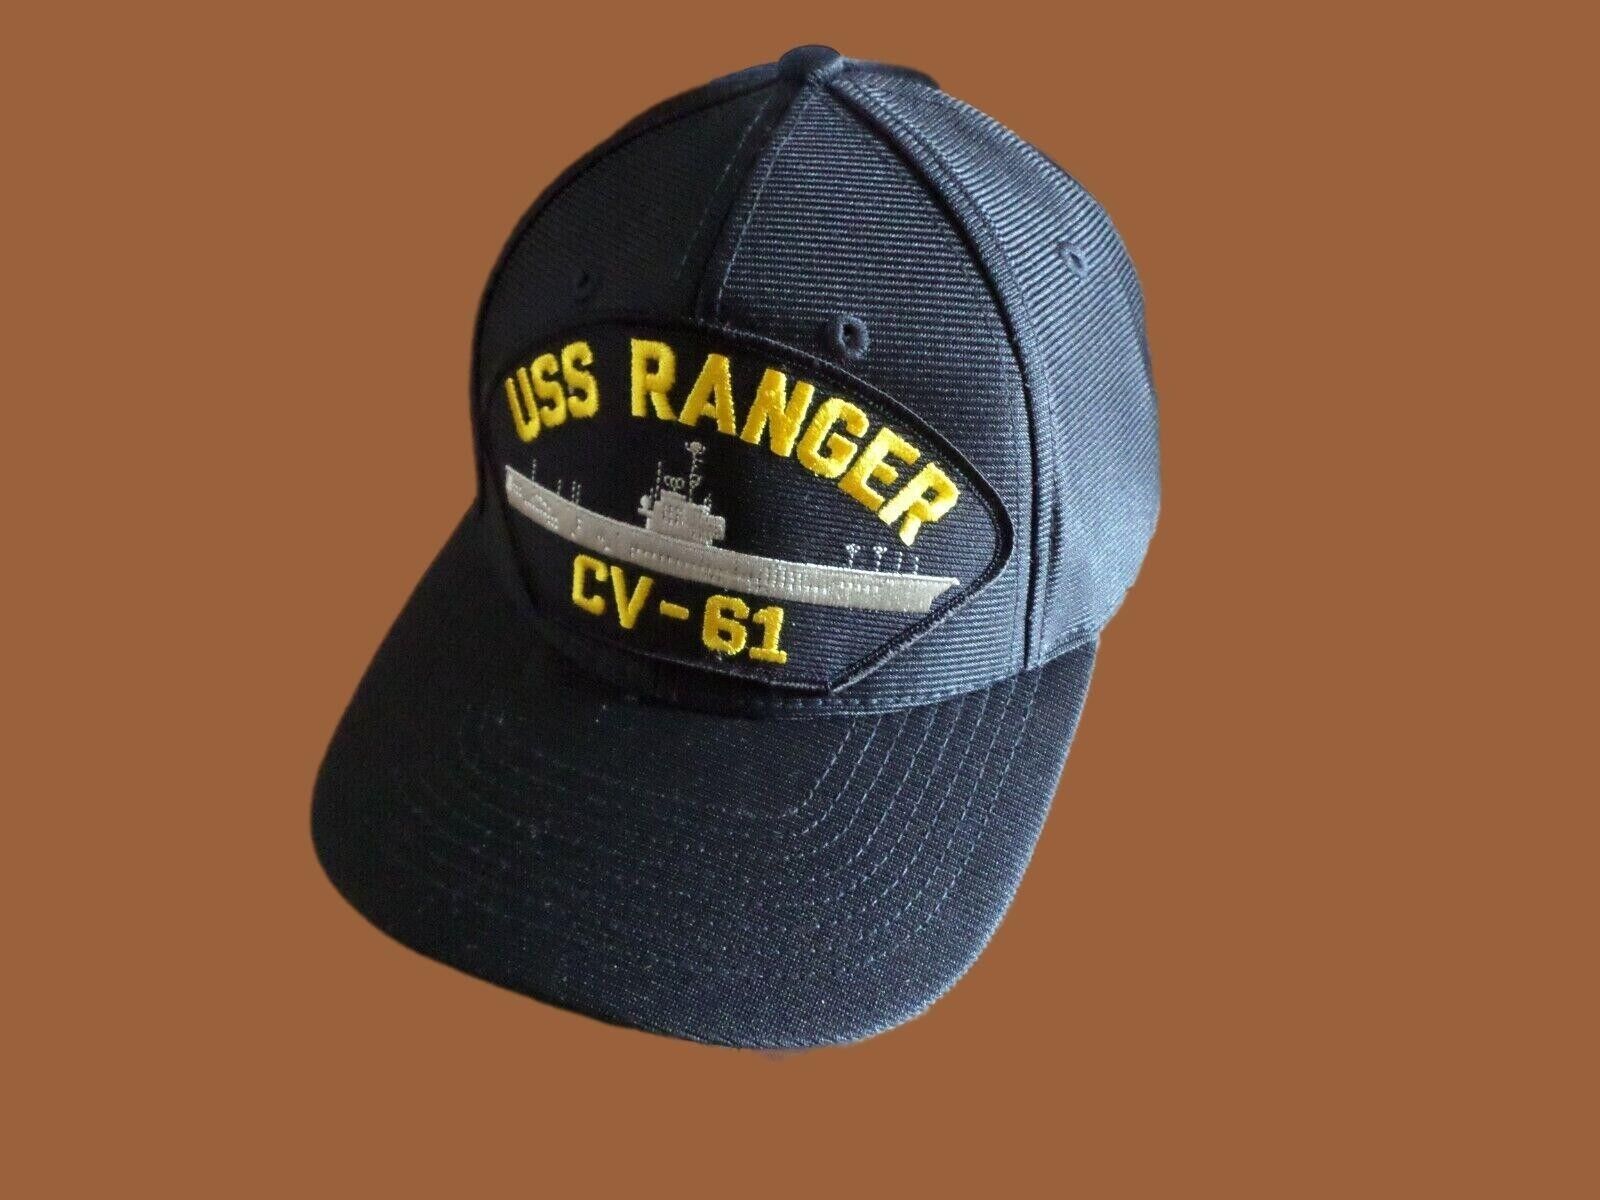 USS RANGER CV-61 NAVY SHIP HAT U.S MILITARY OFFICIAL BALL CAP U.S.A MADE